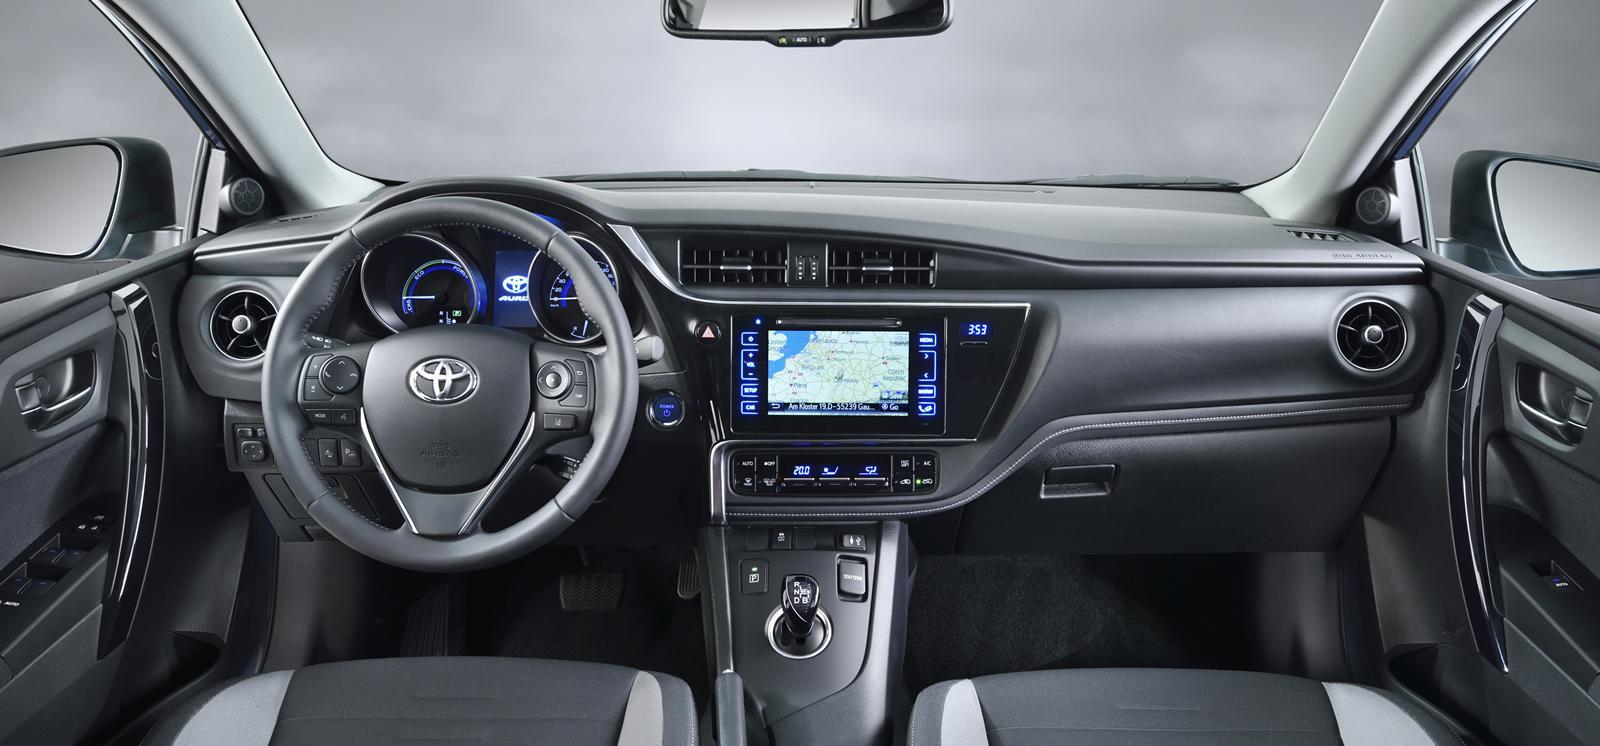 Nowa Toyota Auris 2015 [facelift] motofilm